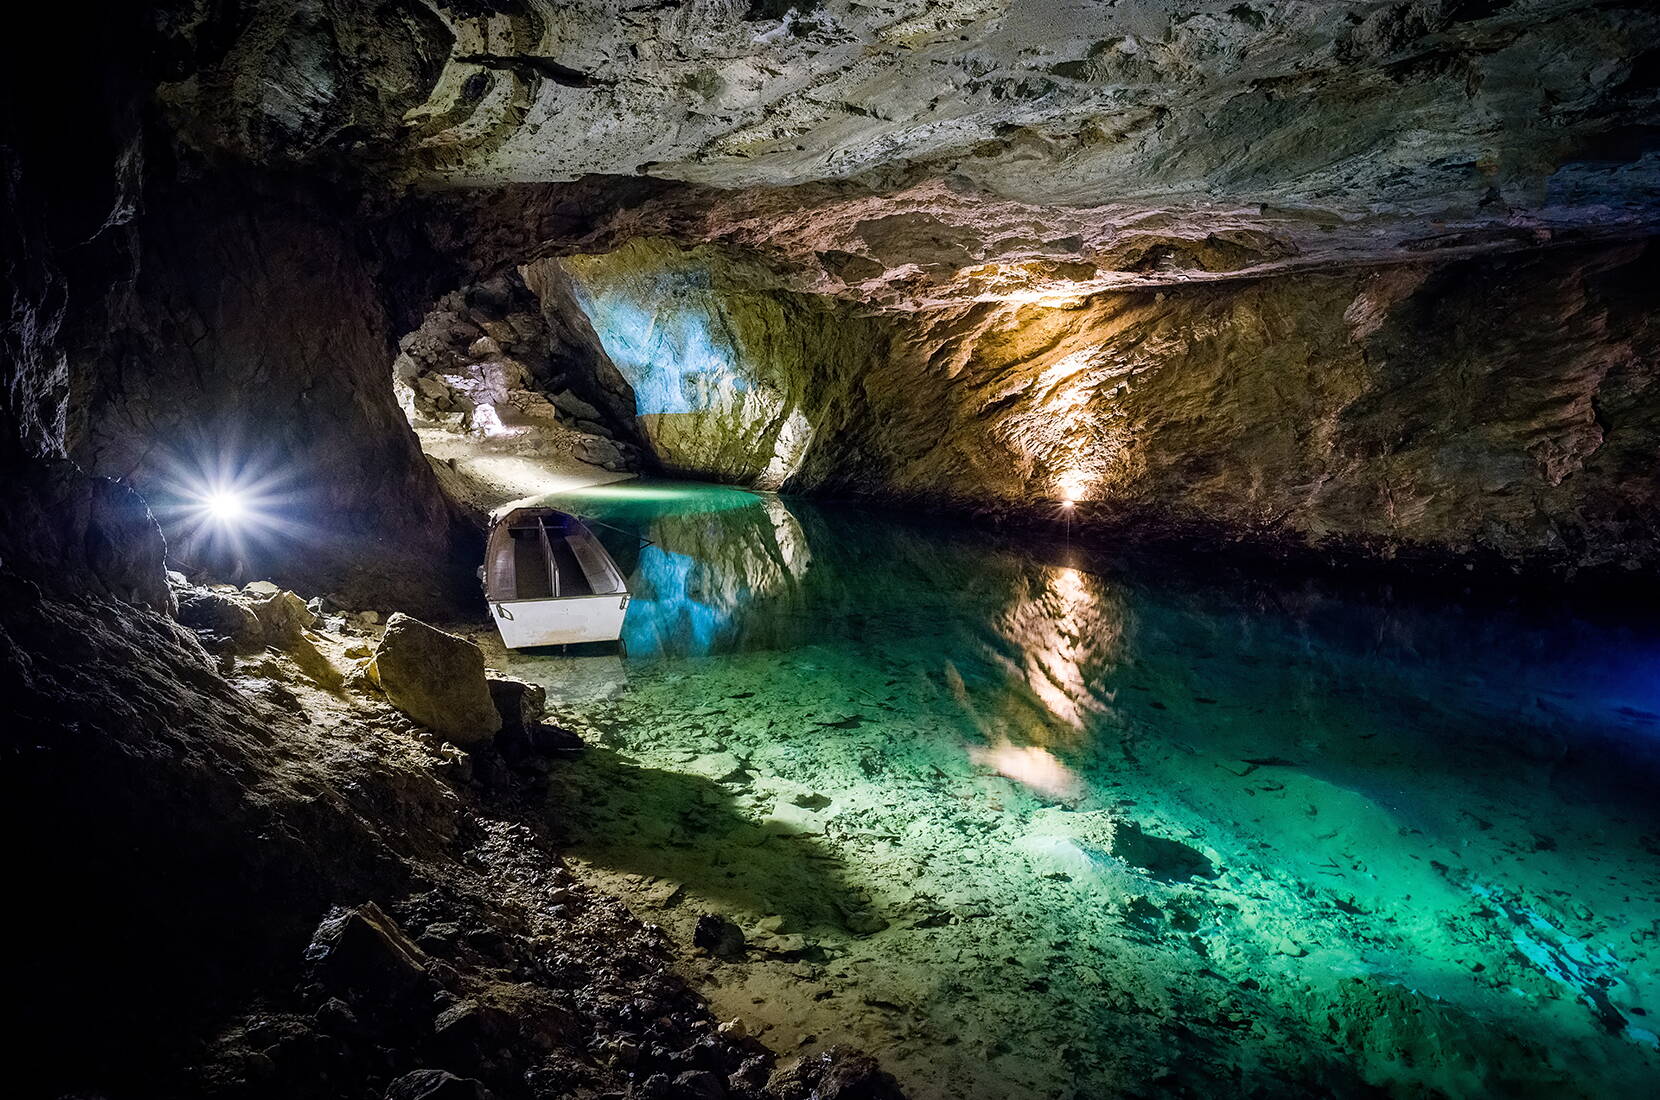 Excursion familiale lac souterrain St-Léonard. En Suisse, au cœur du Valais, entre Sion et Sierre, se trouve le plus grand lac souterrain naturel d'Europe.